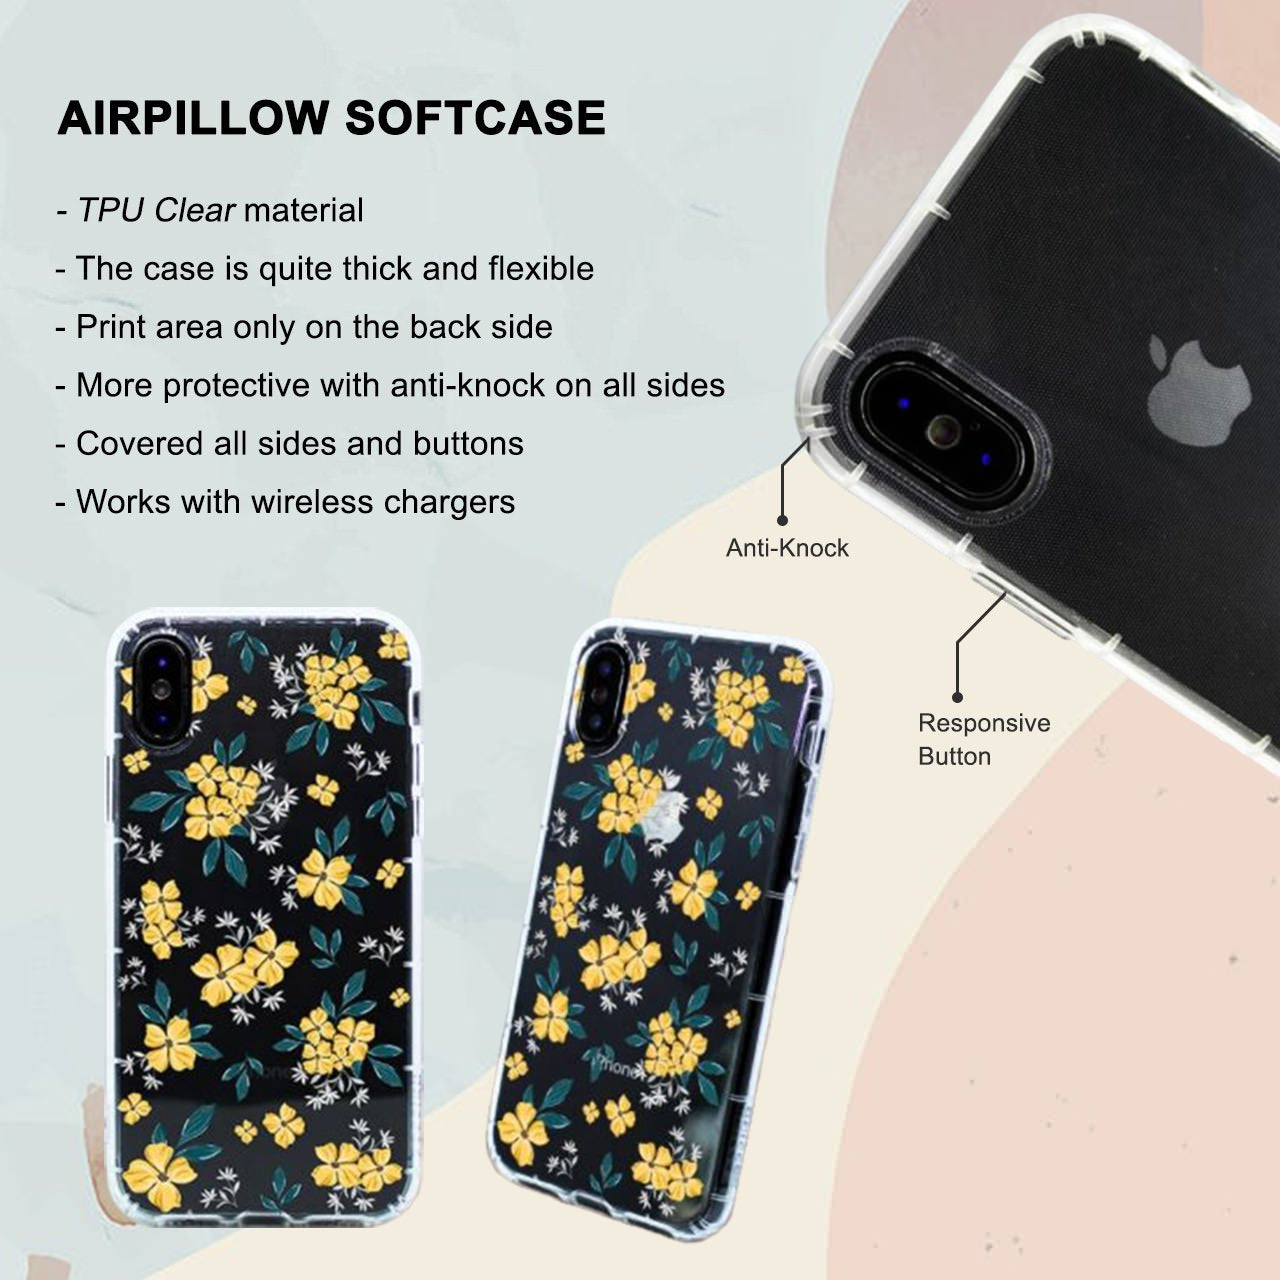 Alligator Skin iPhone 6 / 6s Plus Case